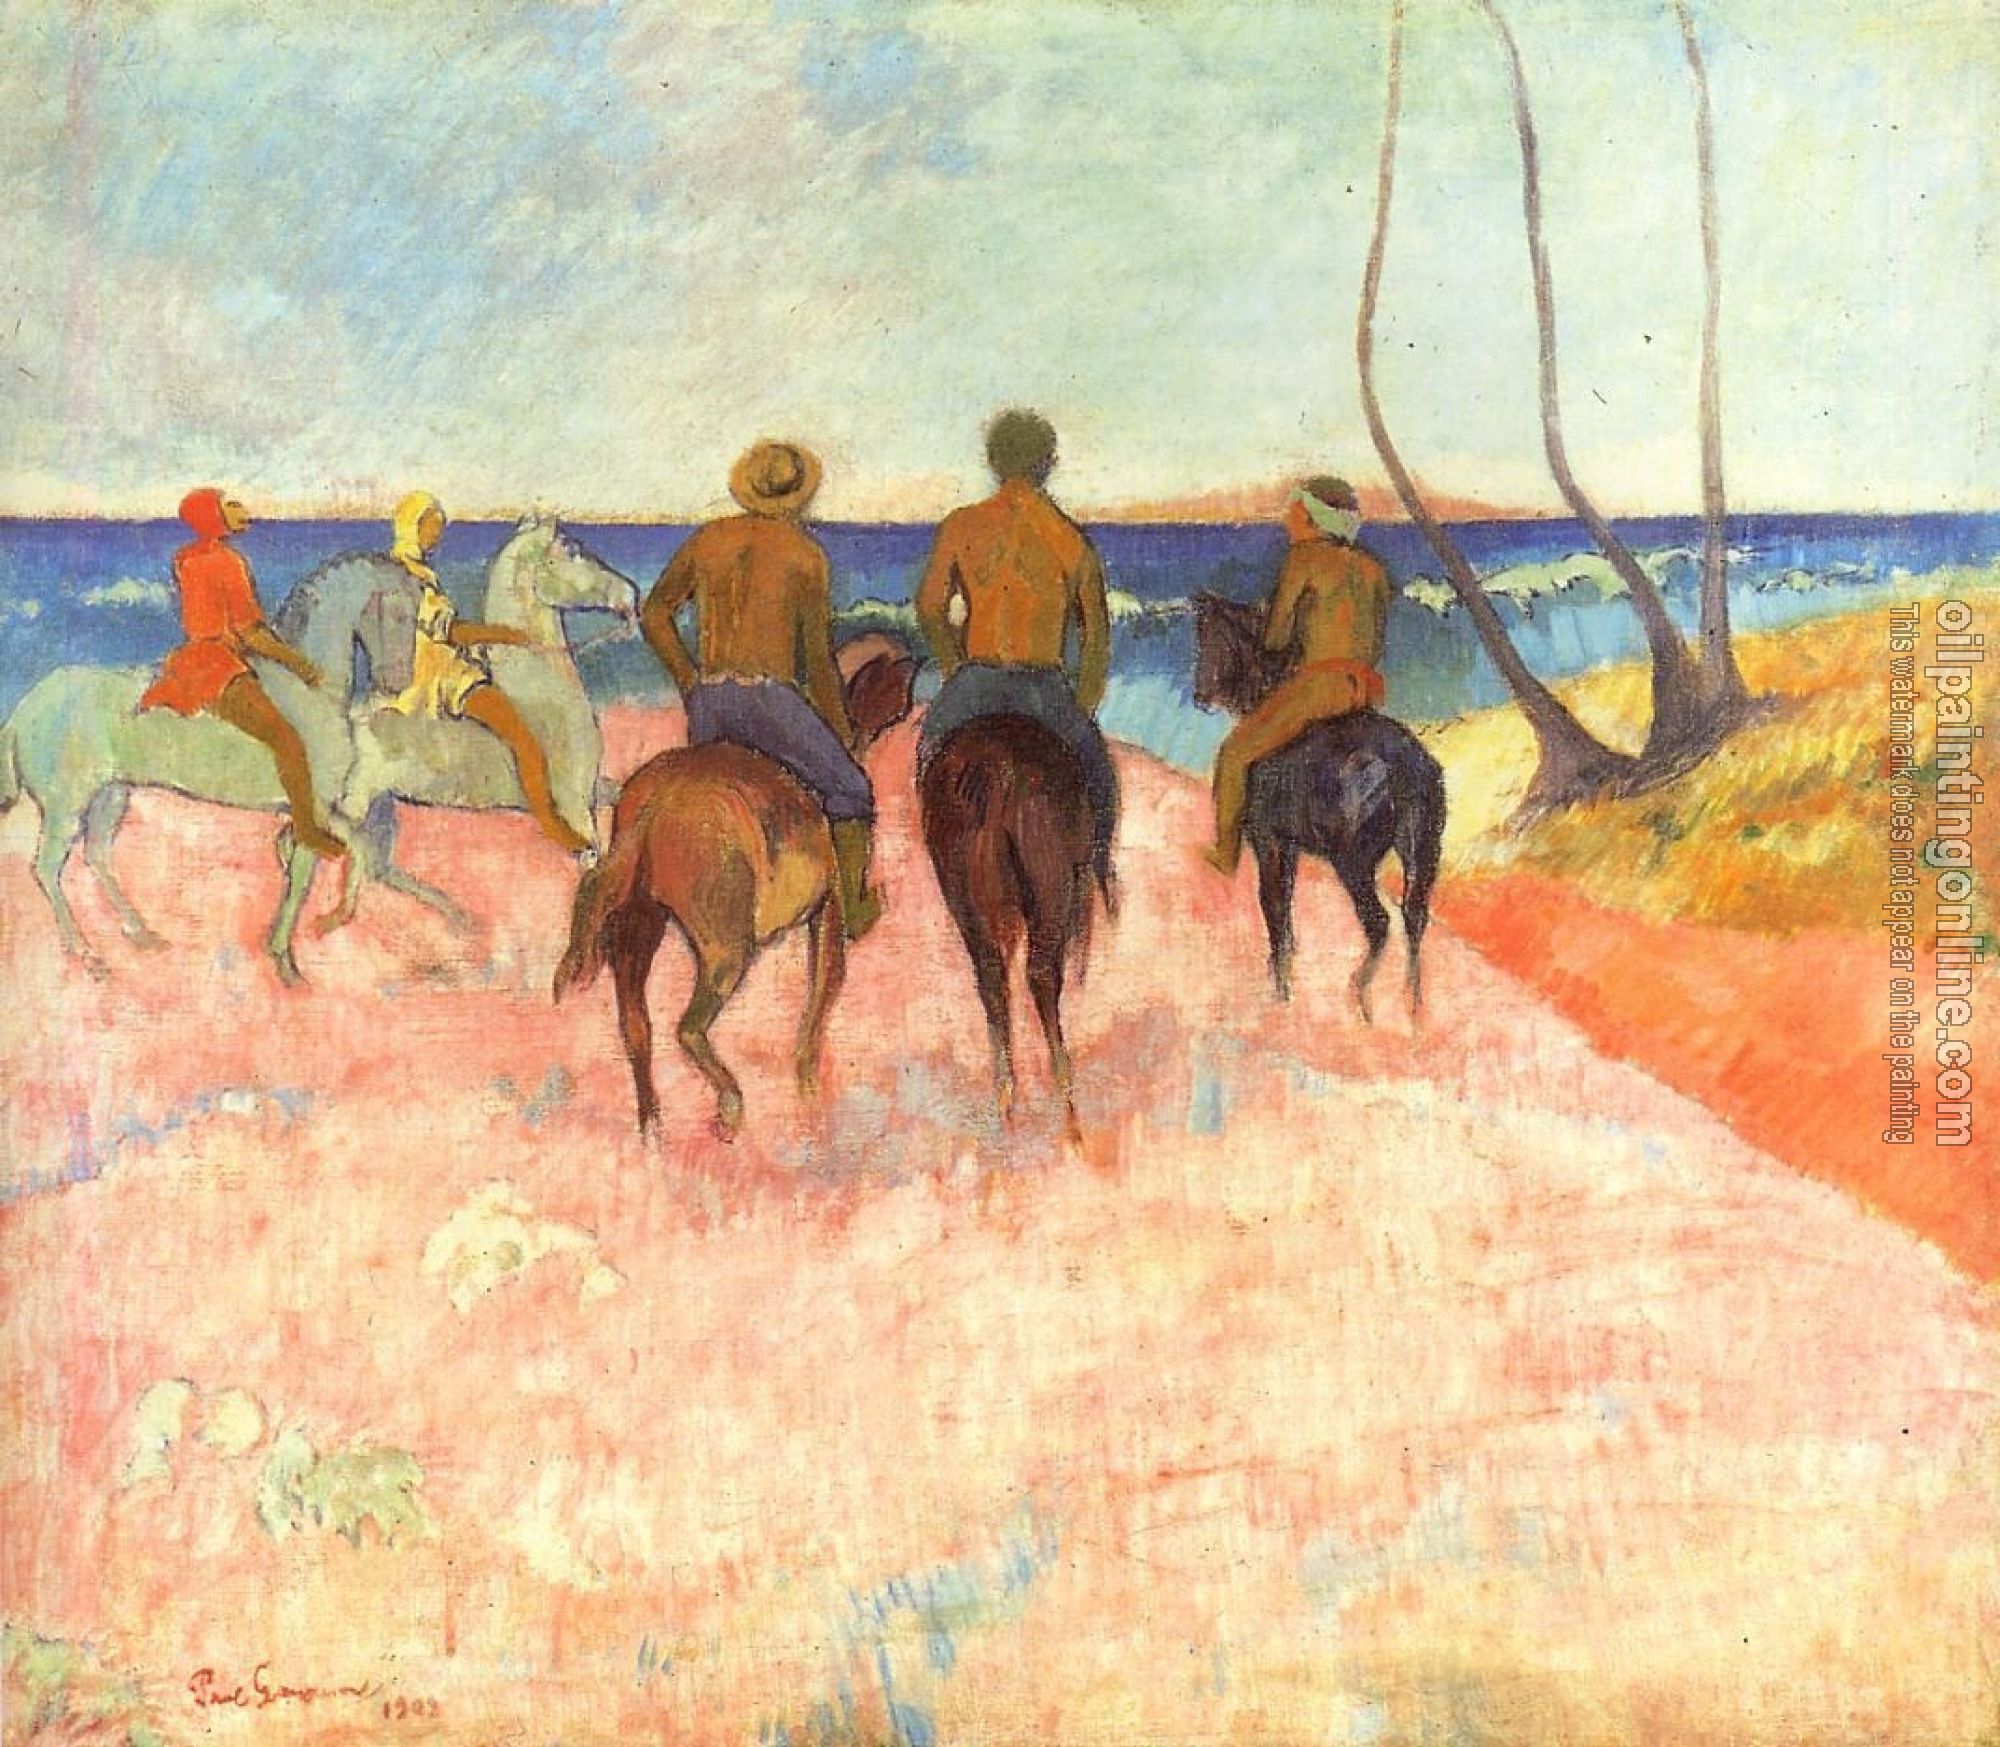 Gauguin, Paul - Riders on the Beach